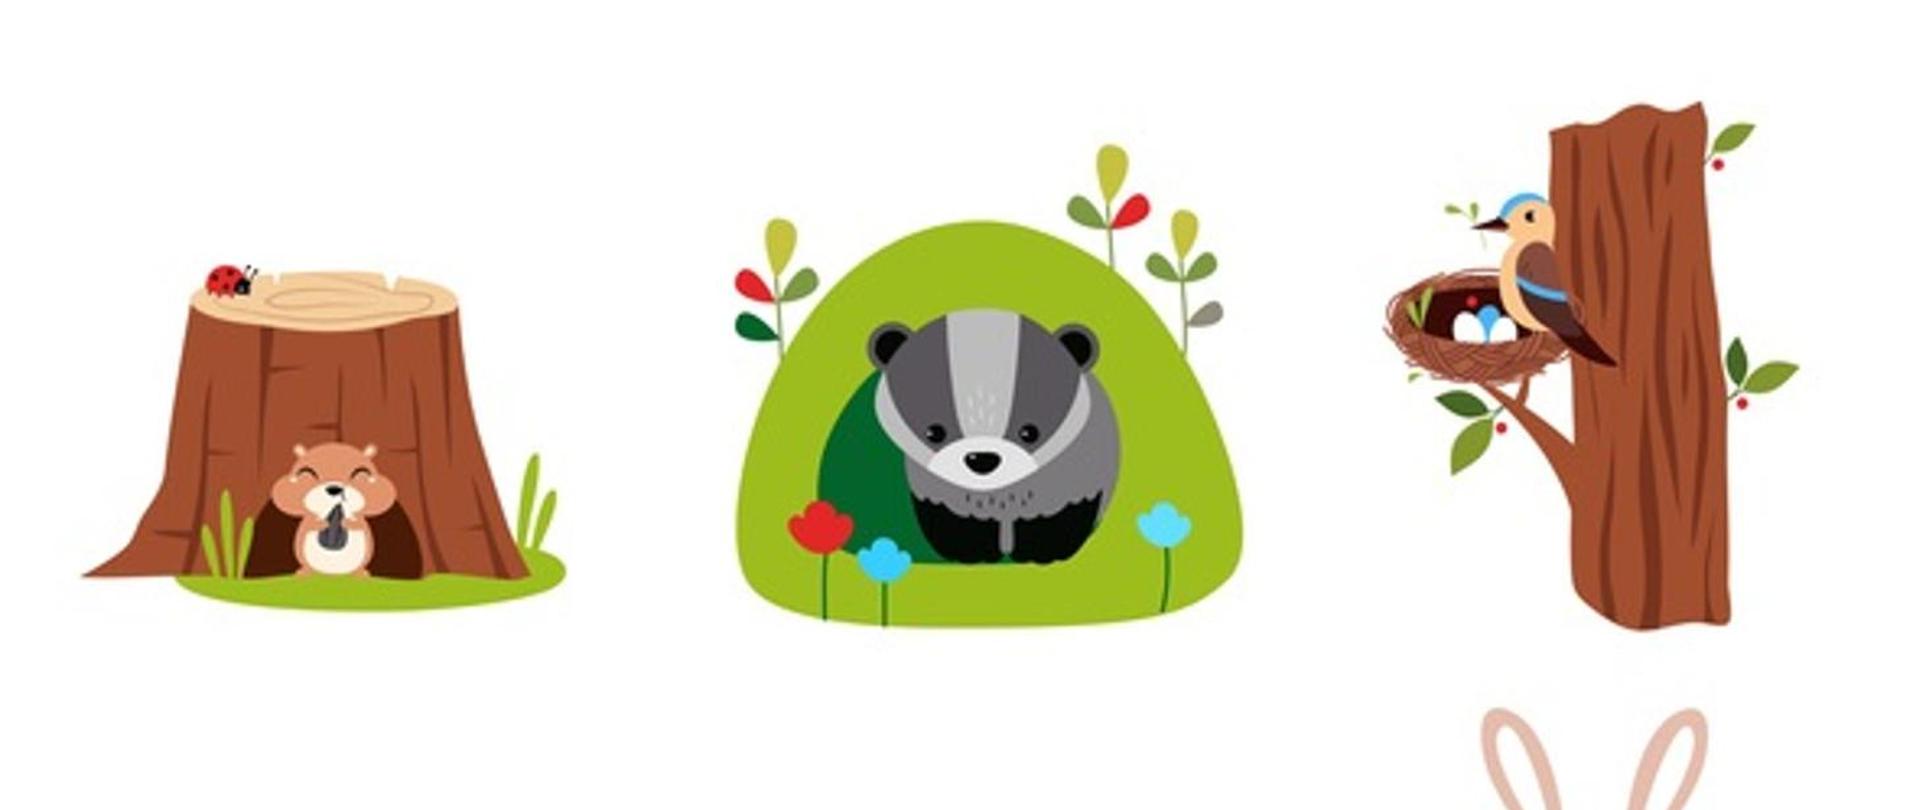 3 obrazki obrazujące zwierzęta leśne siedzące w norach oraz w gnieździe na drzewie. Są to miejsca ich schronienia i odpoczynku.